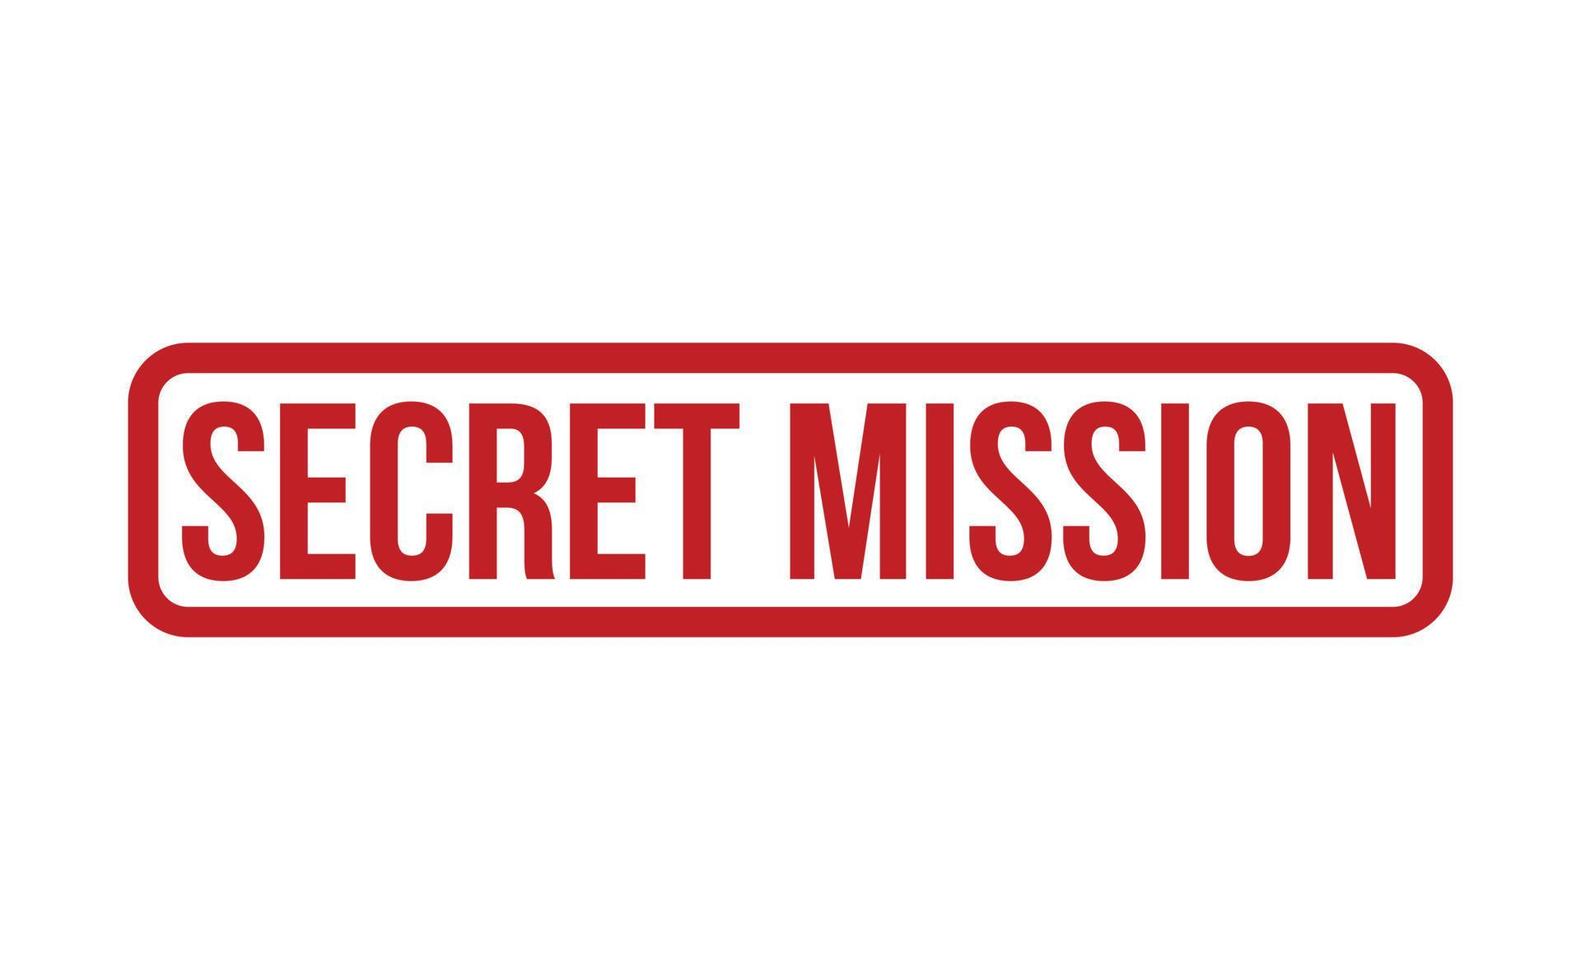 secret mission caoutchouc timbre. rouge secret mission caoutchouc grunge timbre joint vecteur illustration - vecteur